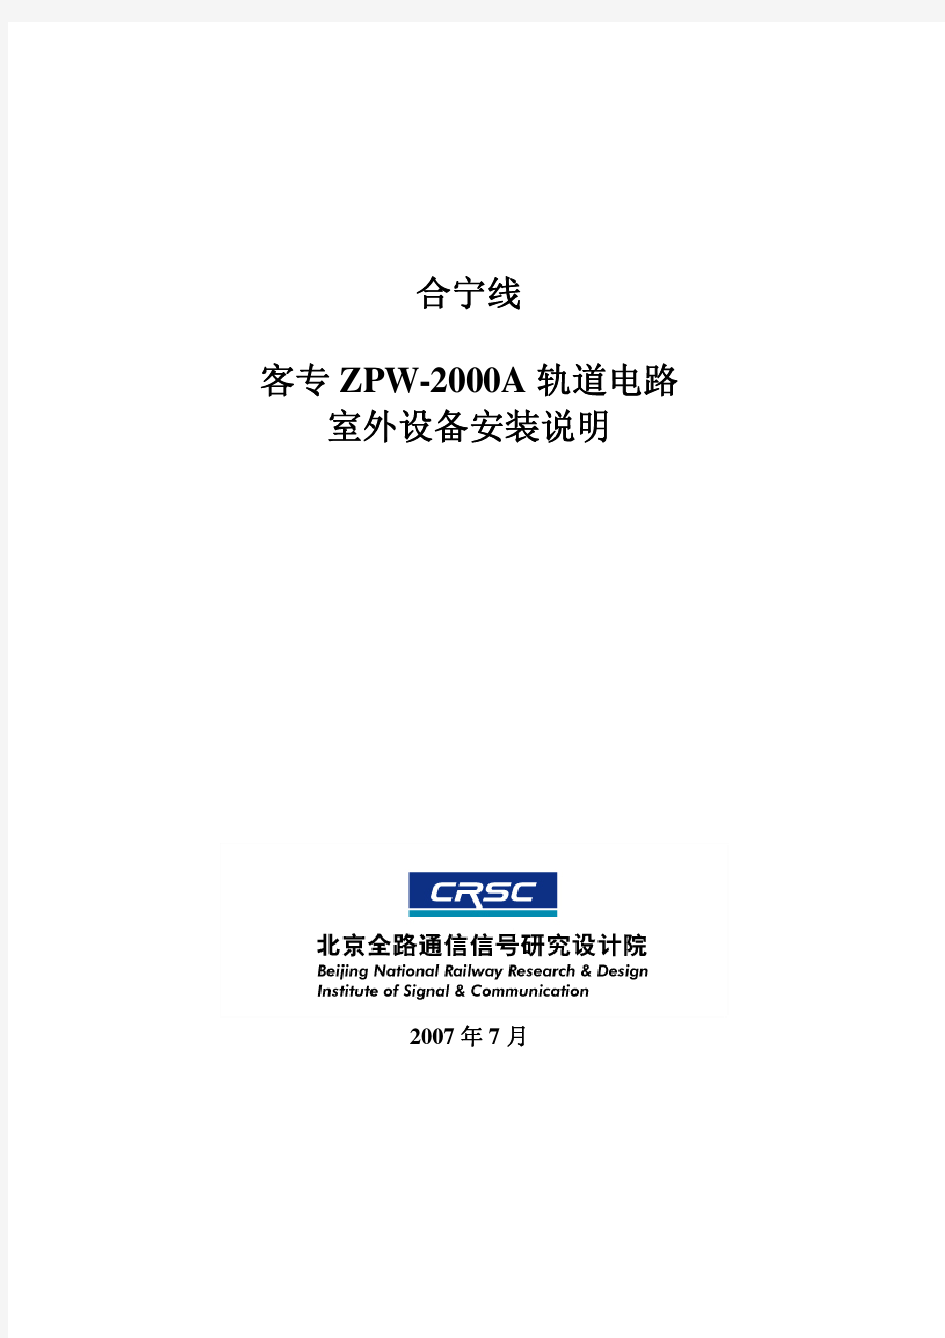 客专ZPW-2000A室外设备安装说明